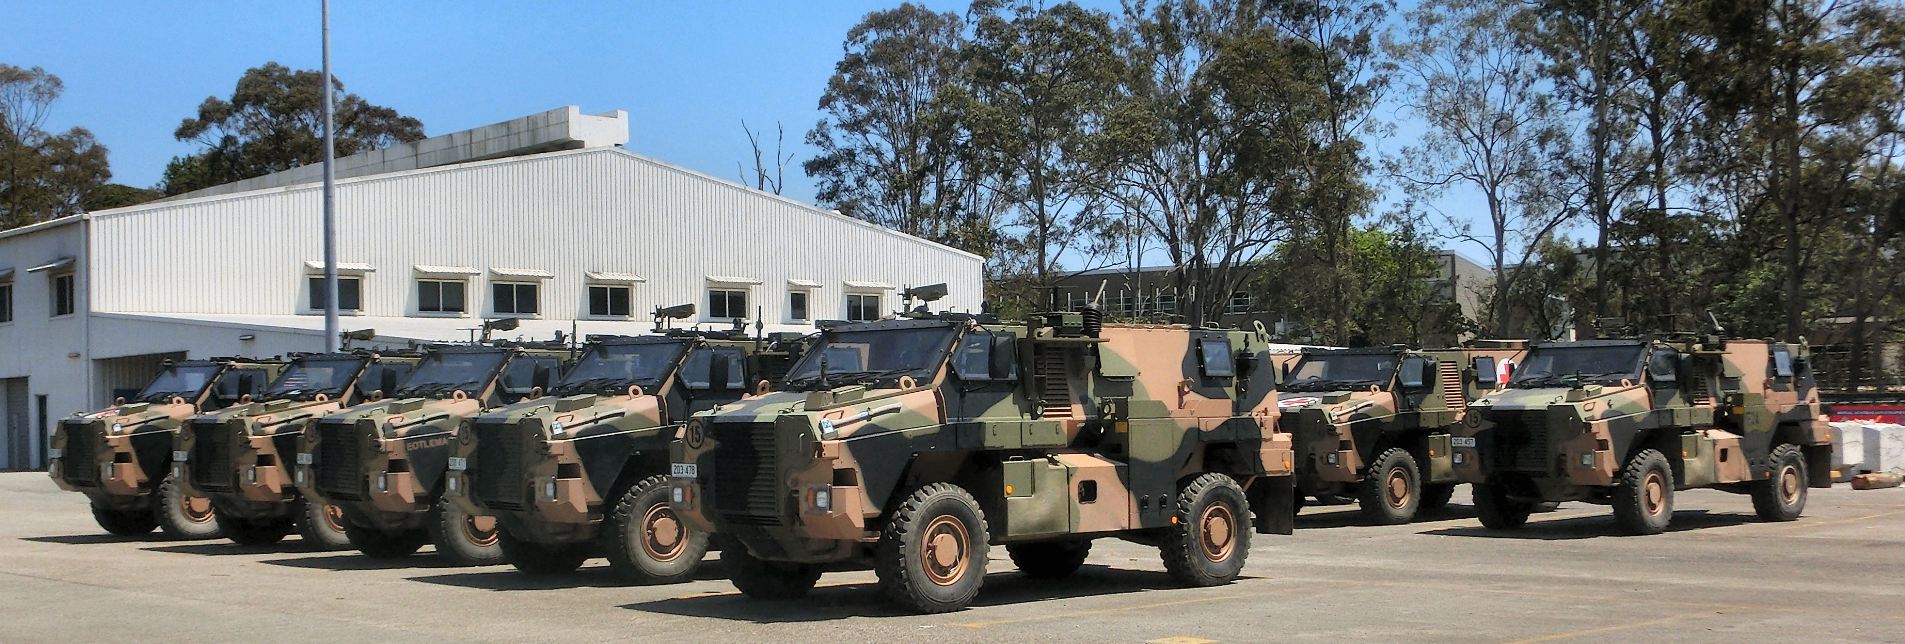 Bushmaster Vehicles